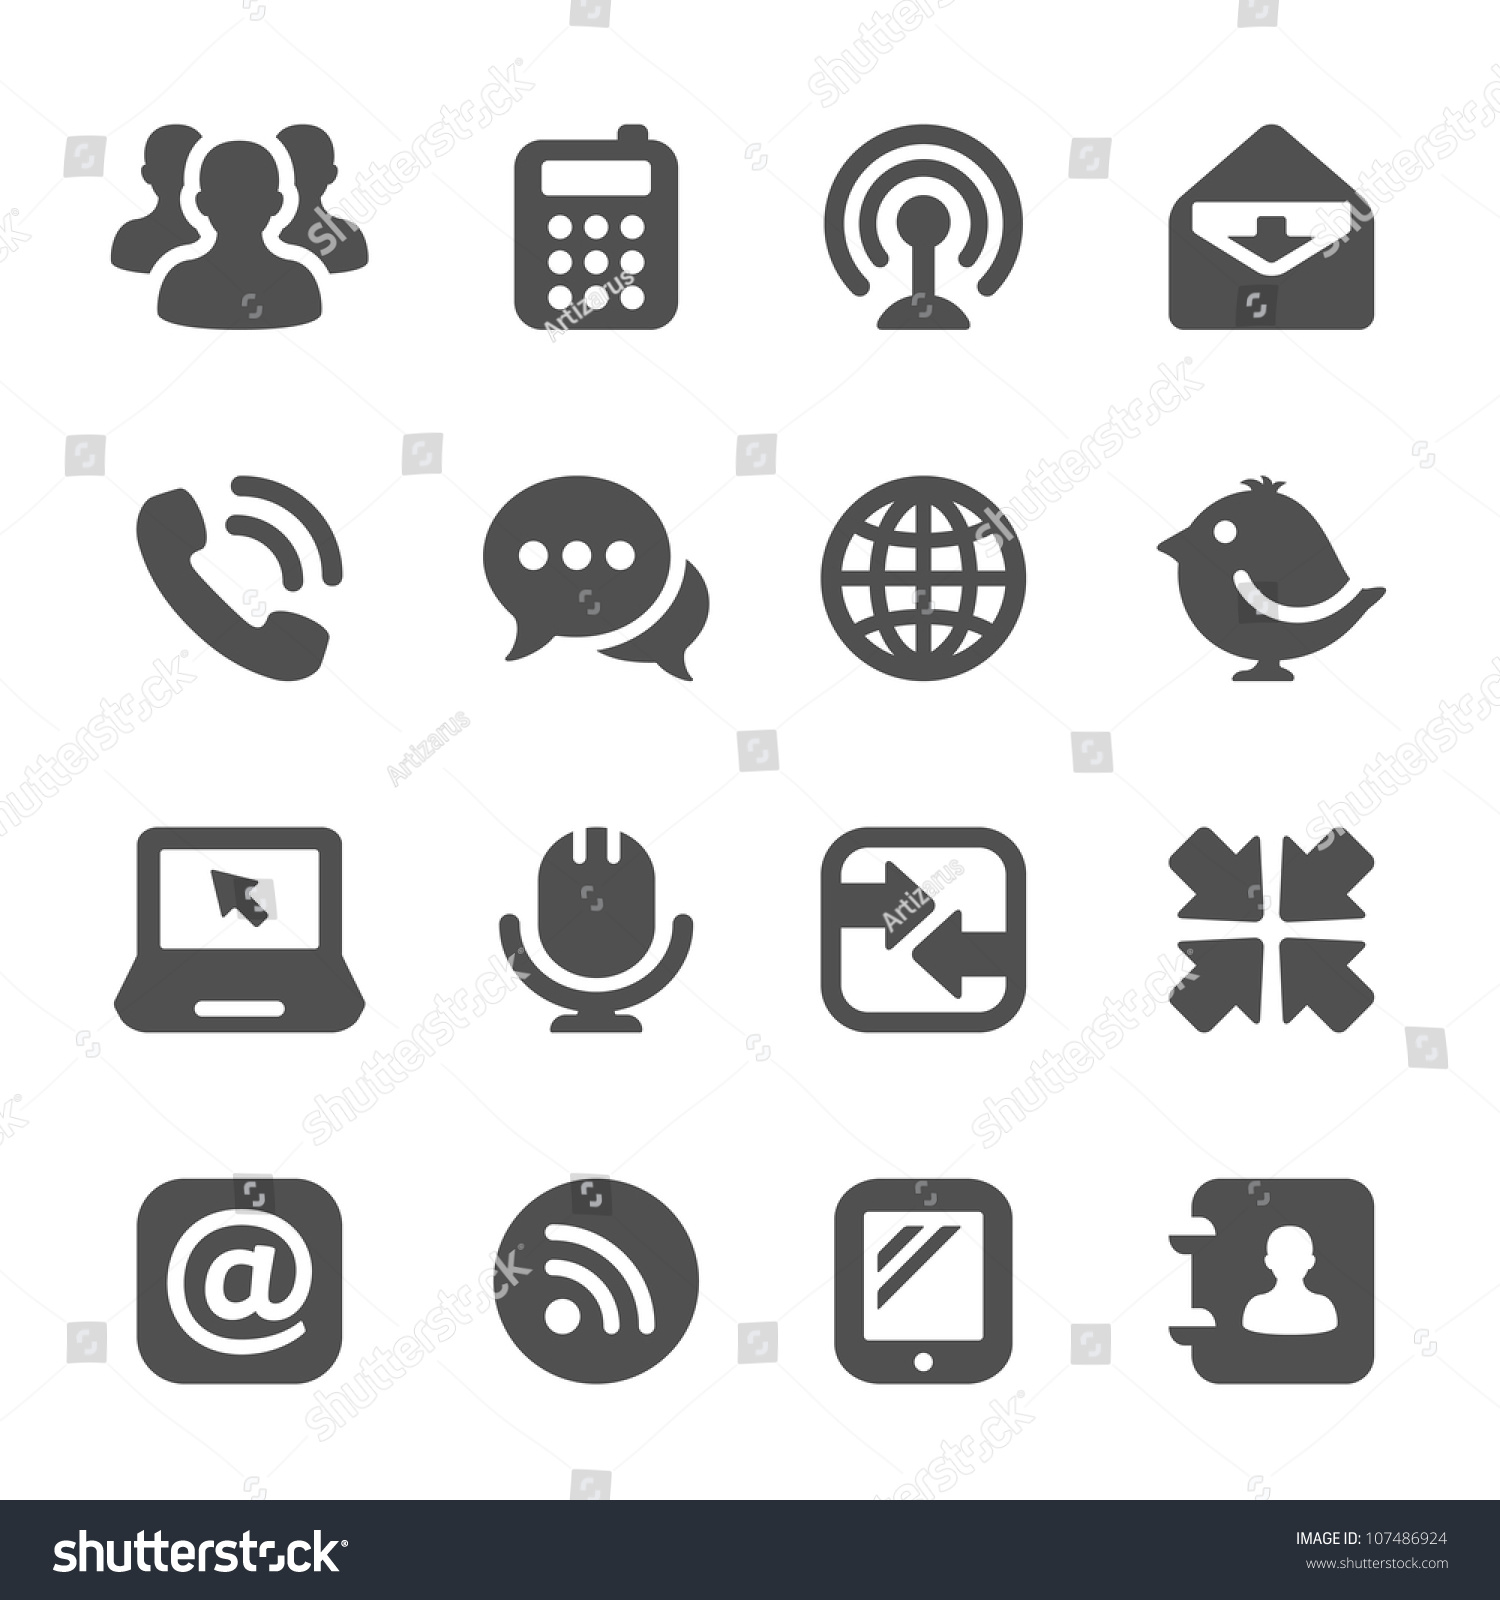 communication icons #107486924